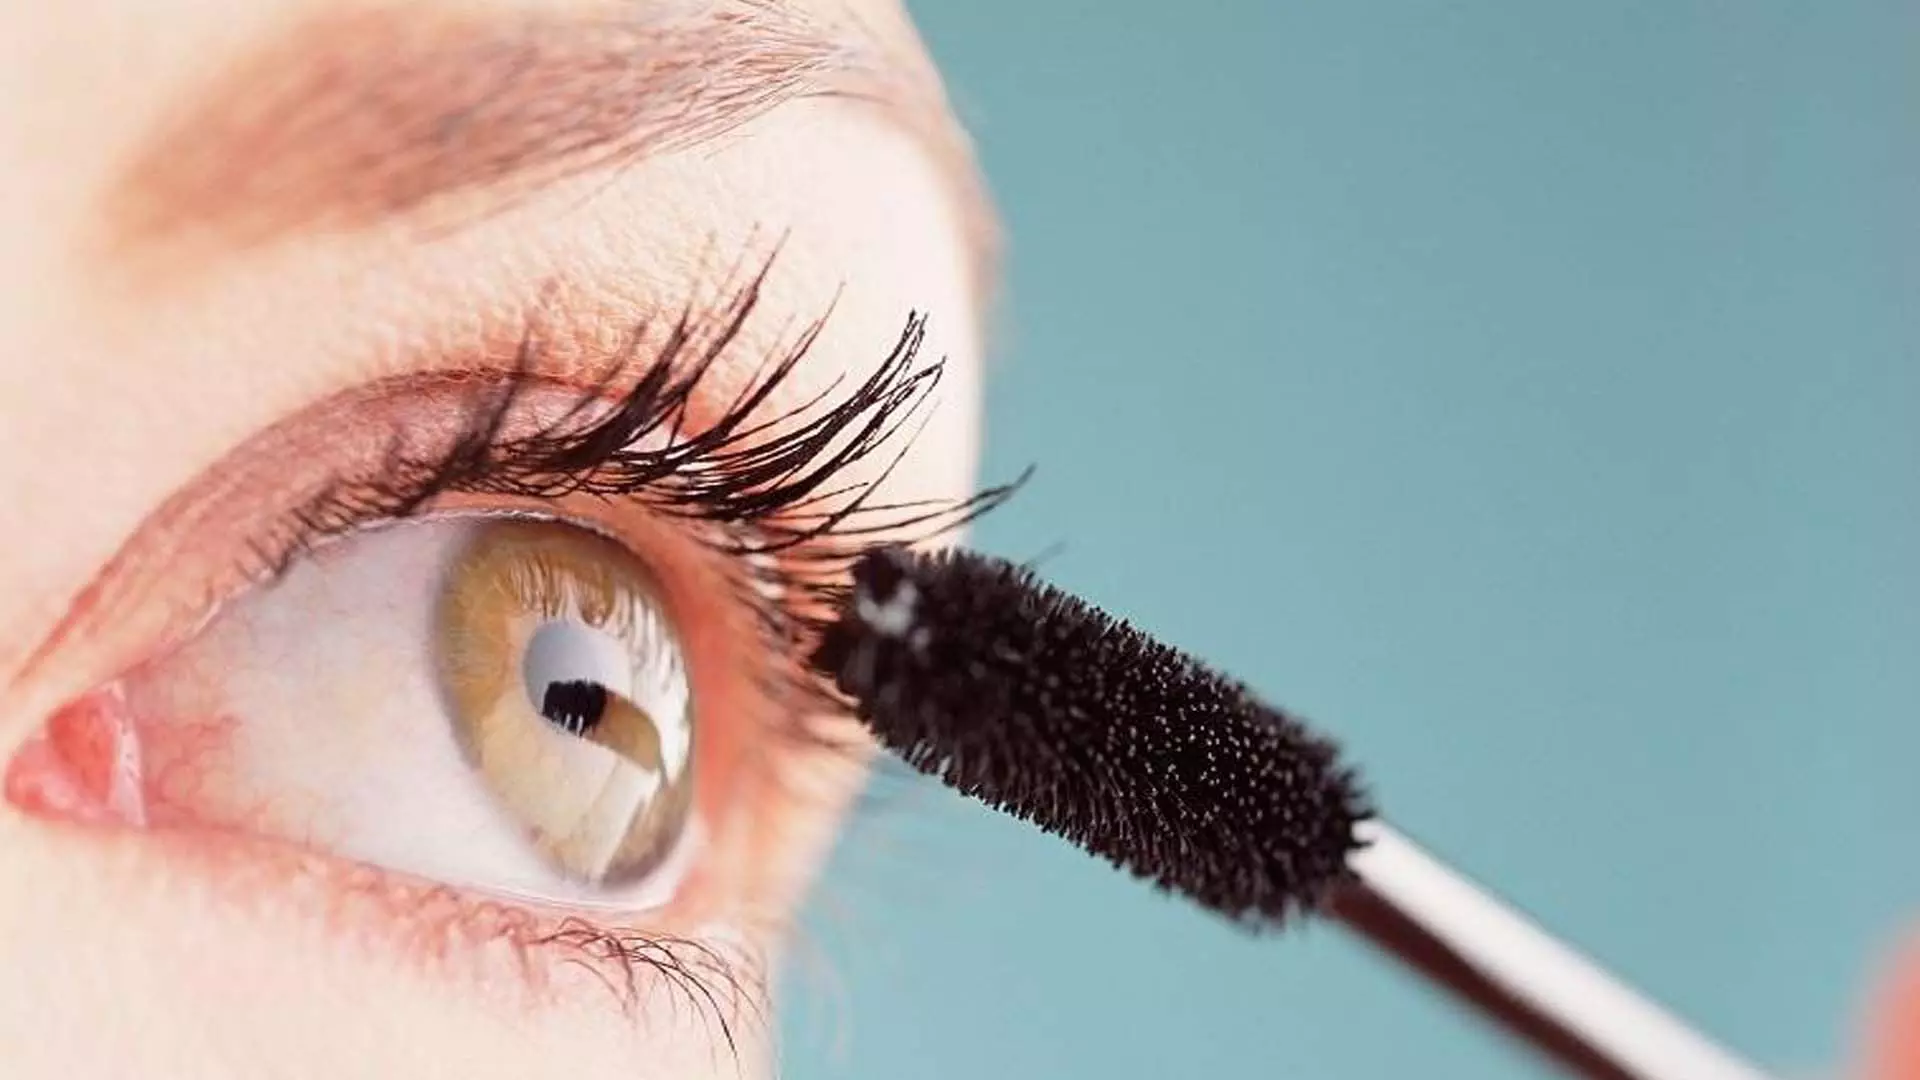 Eye care: रात में आंखों से काजल साफ करके सोएं ले इन 10 आसान टिप्स की मदद